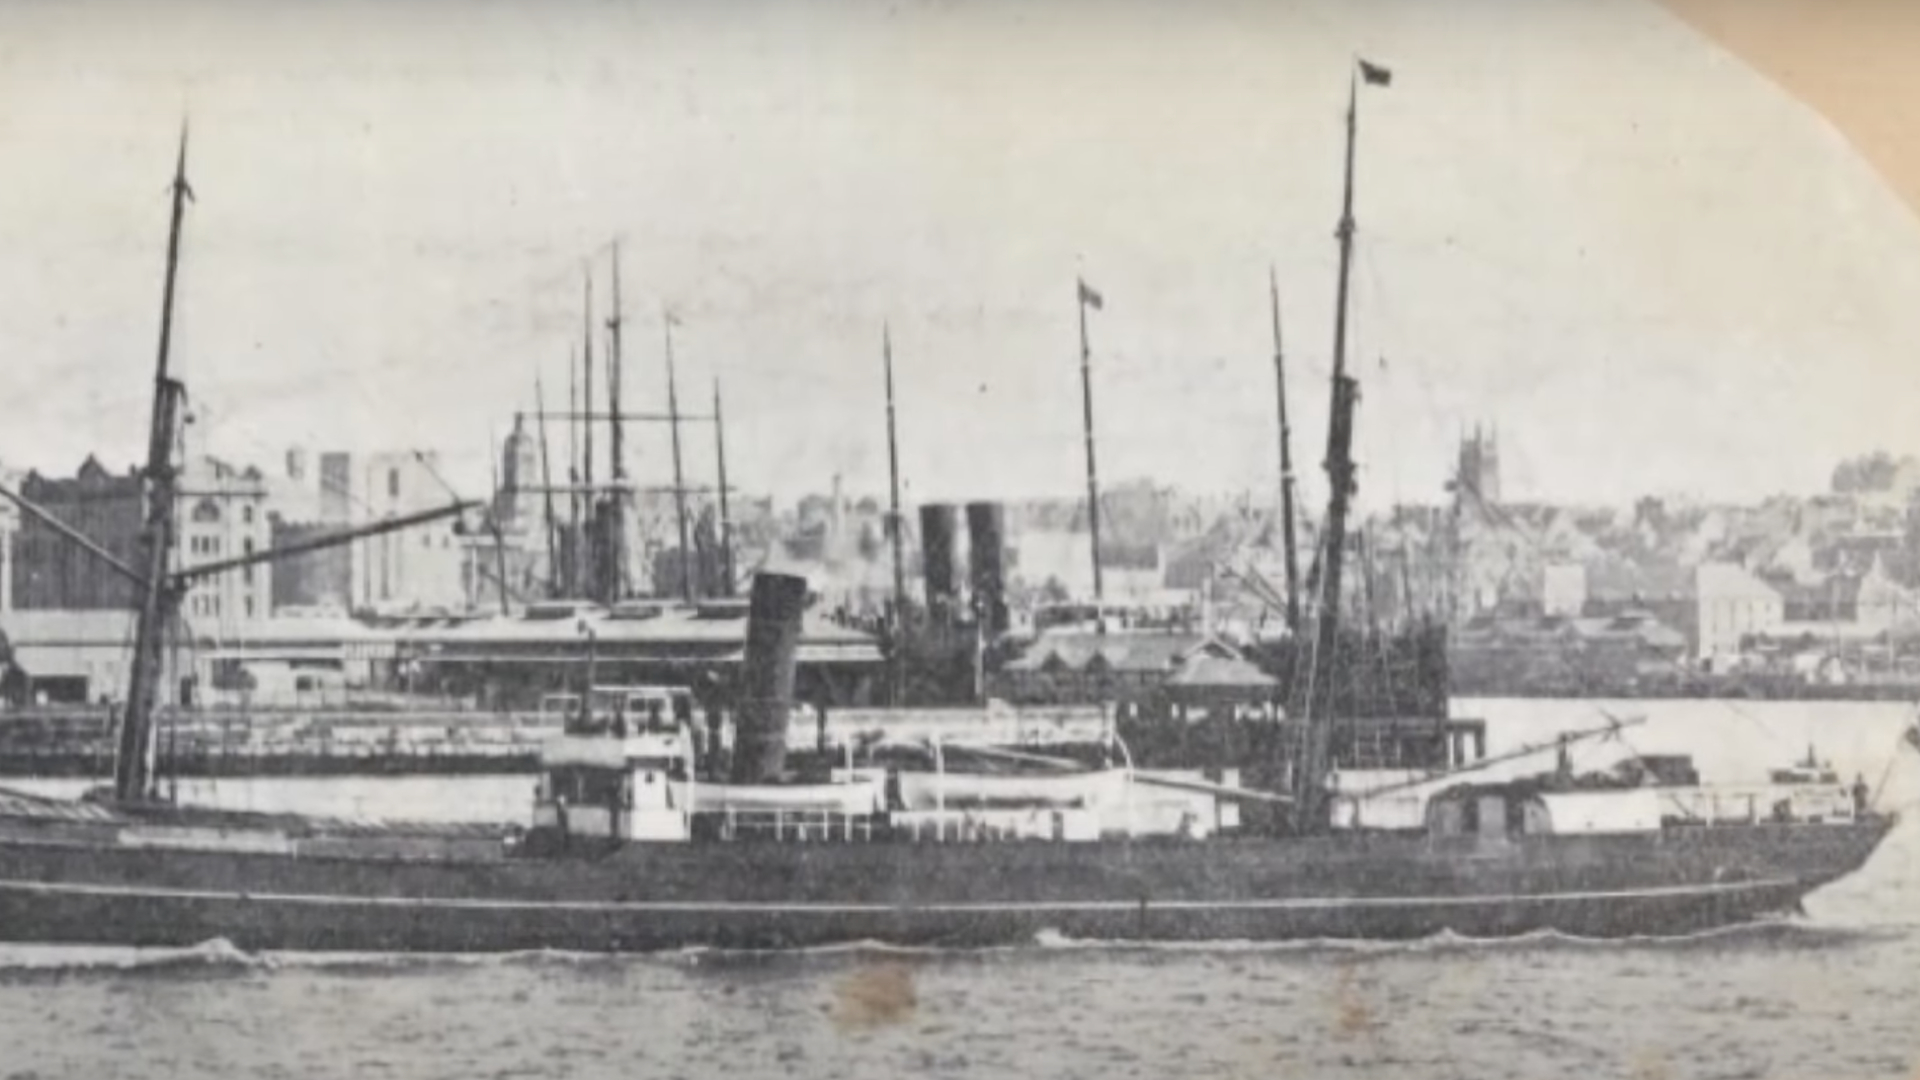 El misterio del barco desaparecido finalmente ha sido resuelto, 120 años después de que aparecieran cadáveres en la orilla